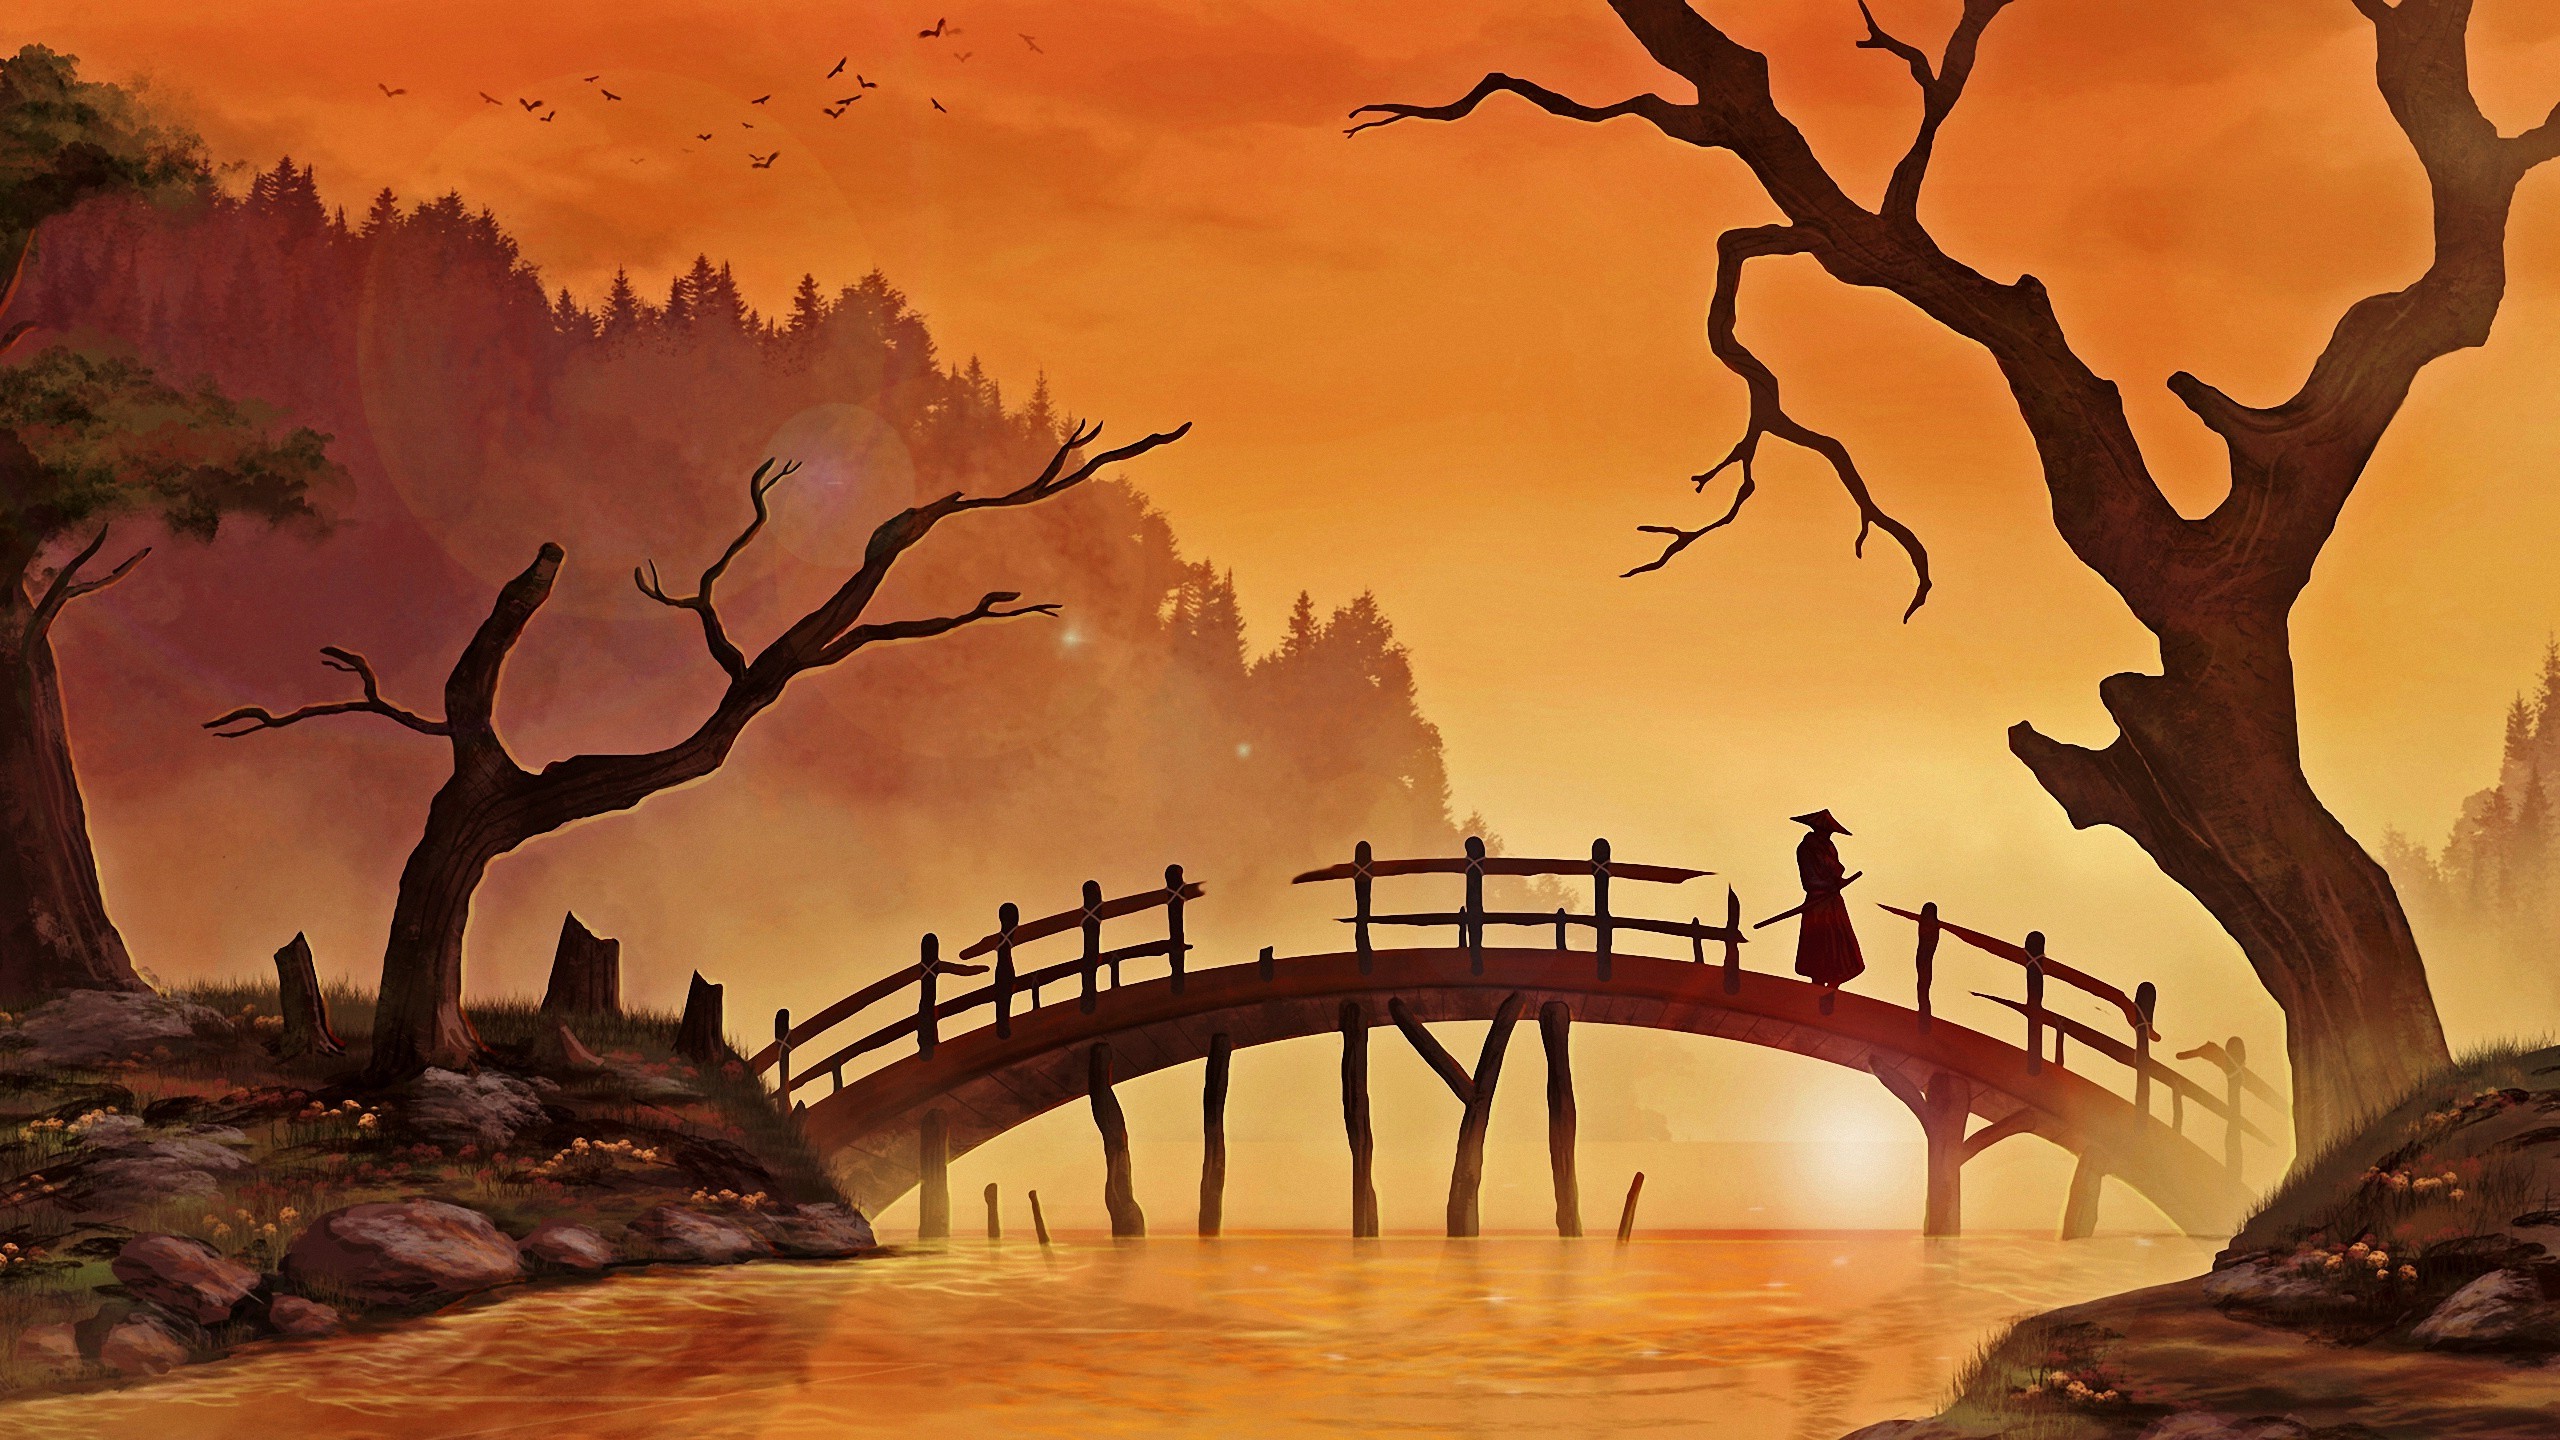 日本のアート壁紙,自然,水彩絵の具,ブリッジ,自然の風景,アーチ橋